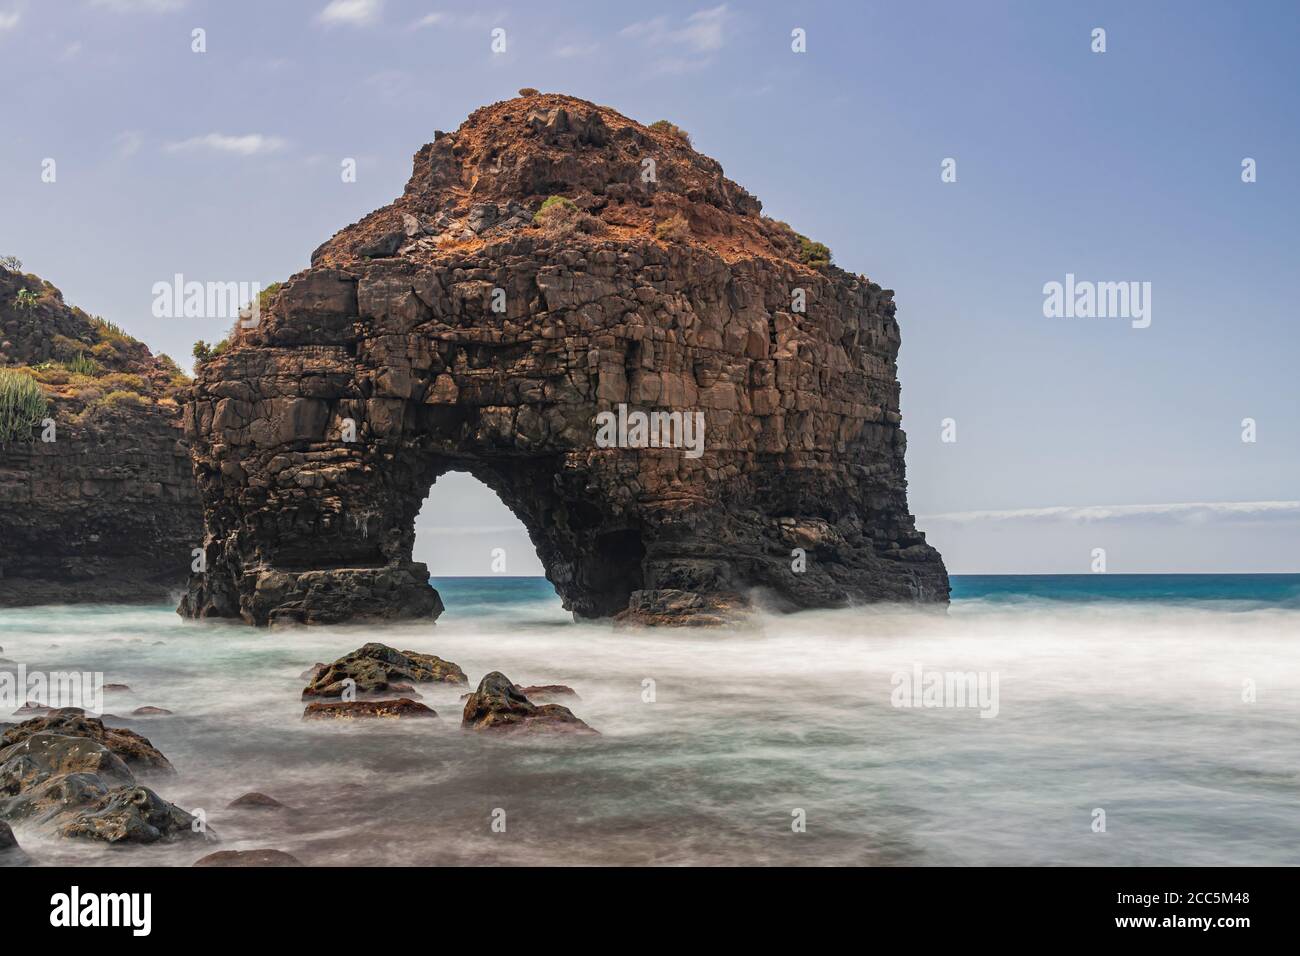 Arco de roca volcánica, playa los Roques, larga exposición, los Realejos, Tenerife, Islas Canarias Foto de stock